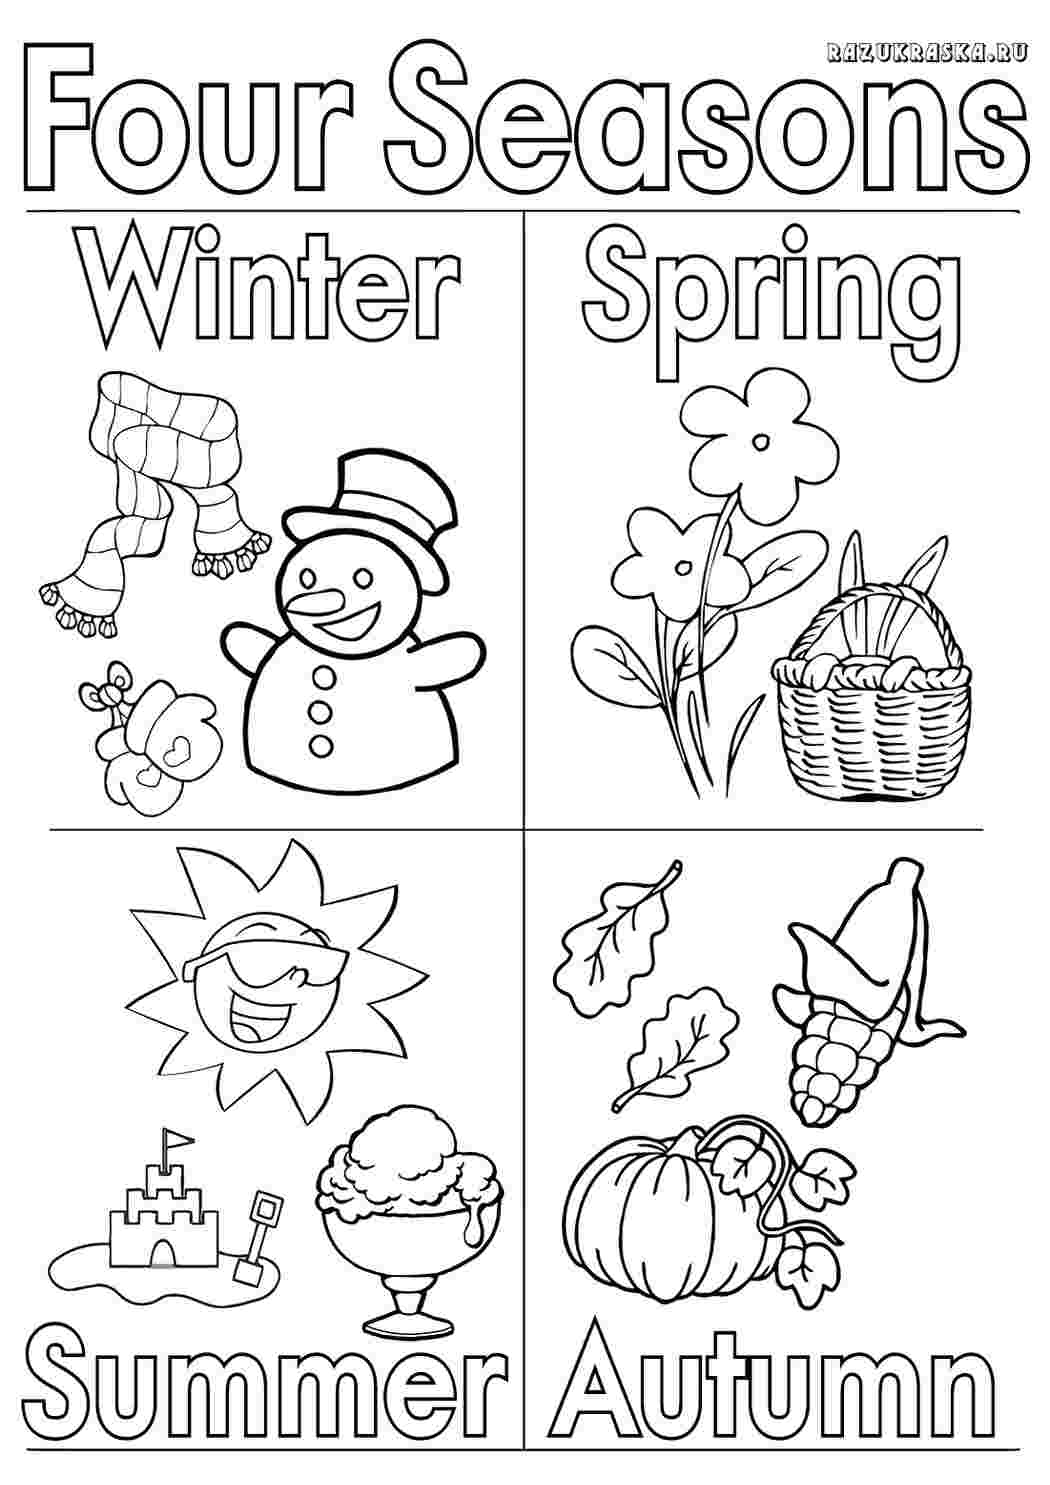 Seasons для детей задания на англ